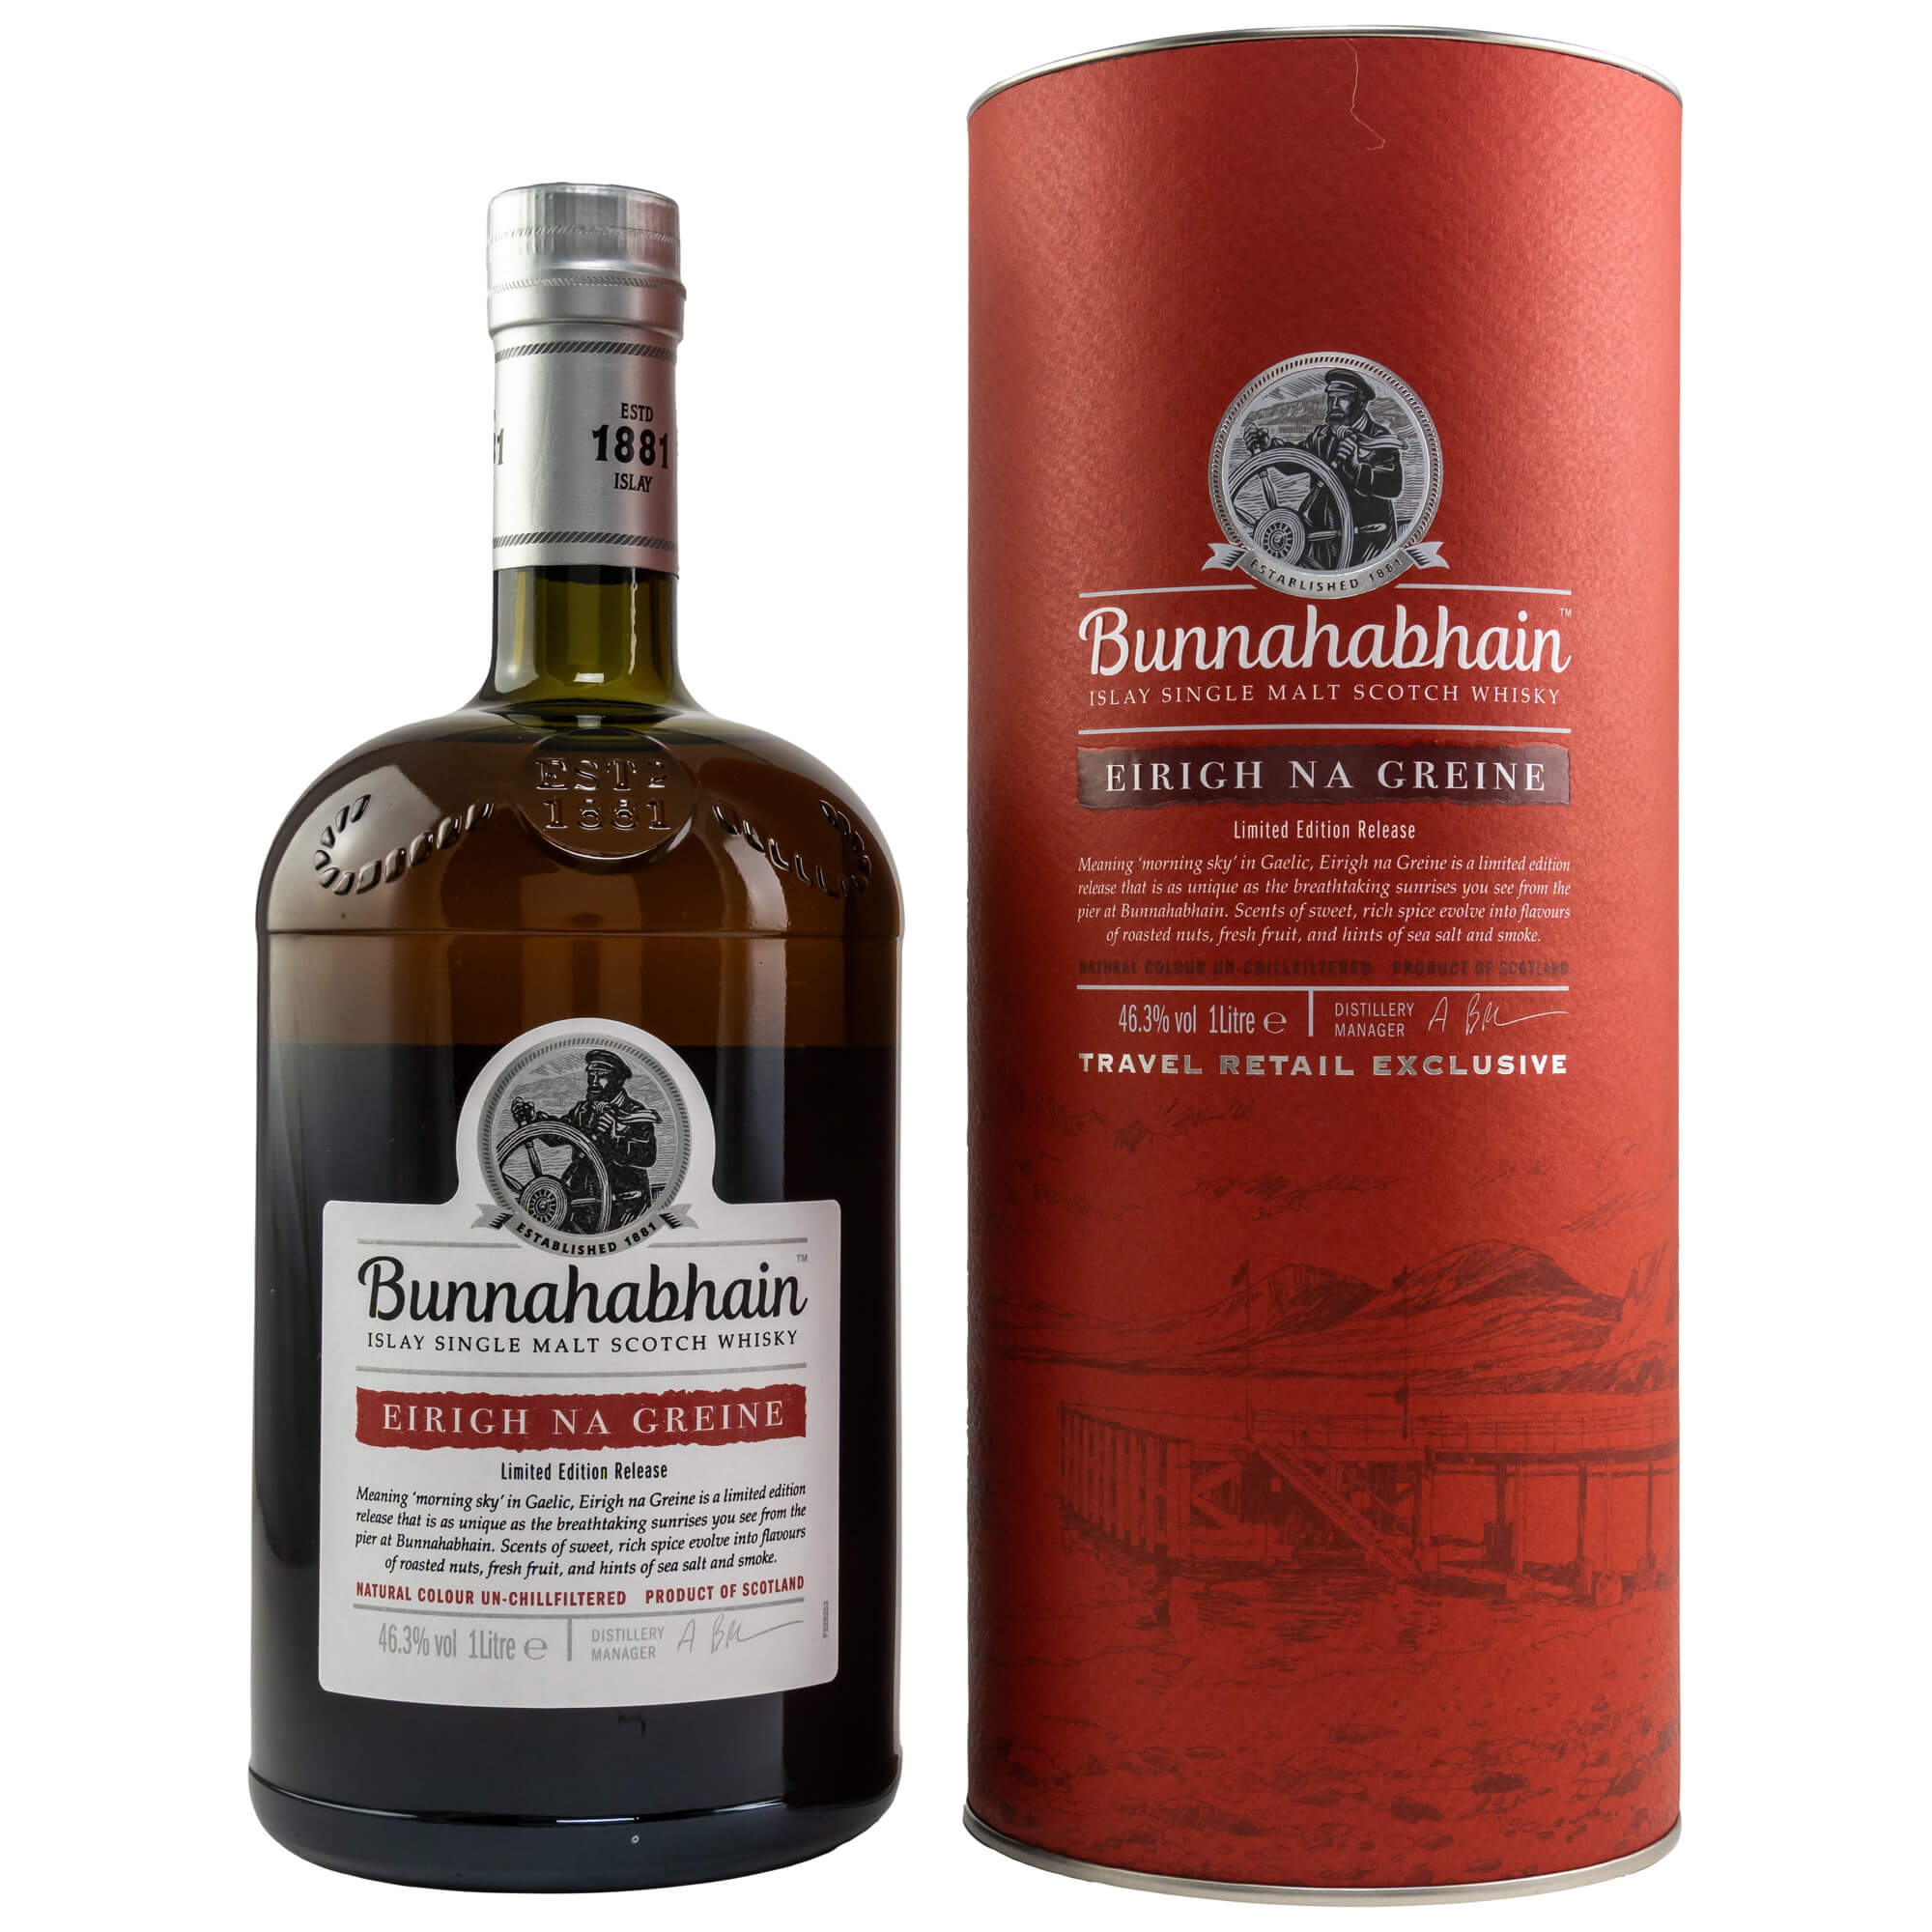 Bunnahabhain Eirigh Na Greine Islay Single Malt Scotch Whisky